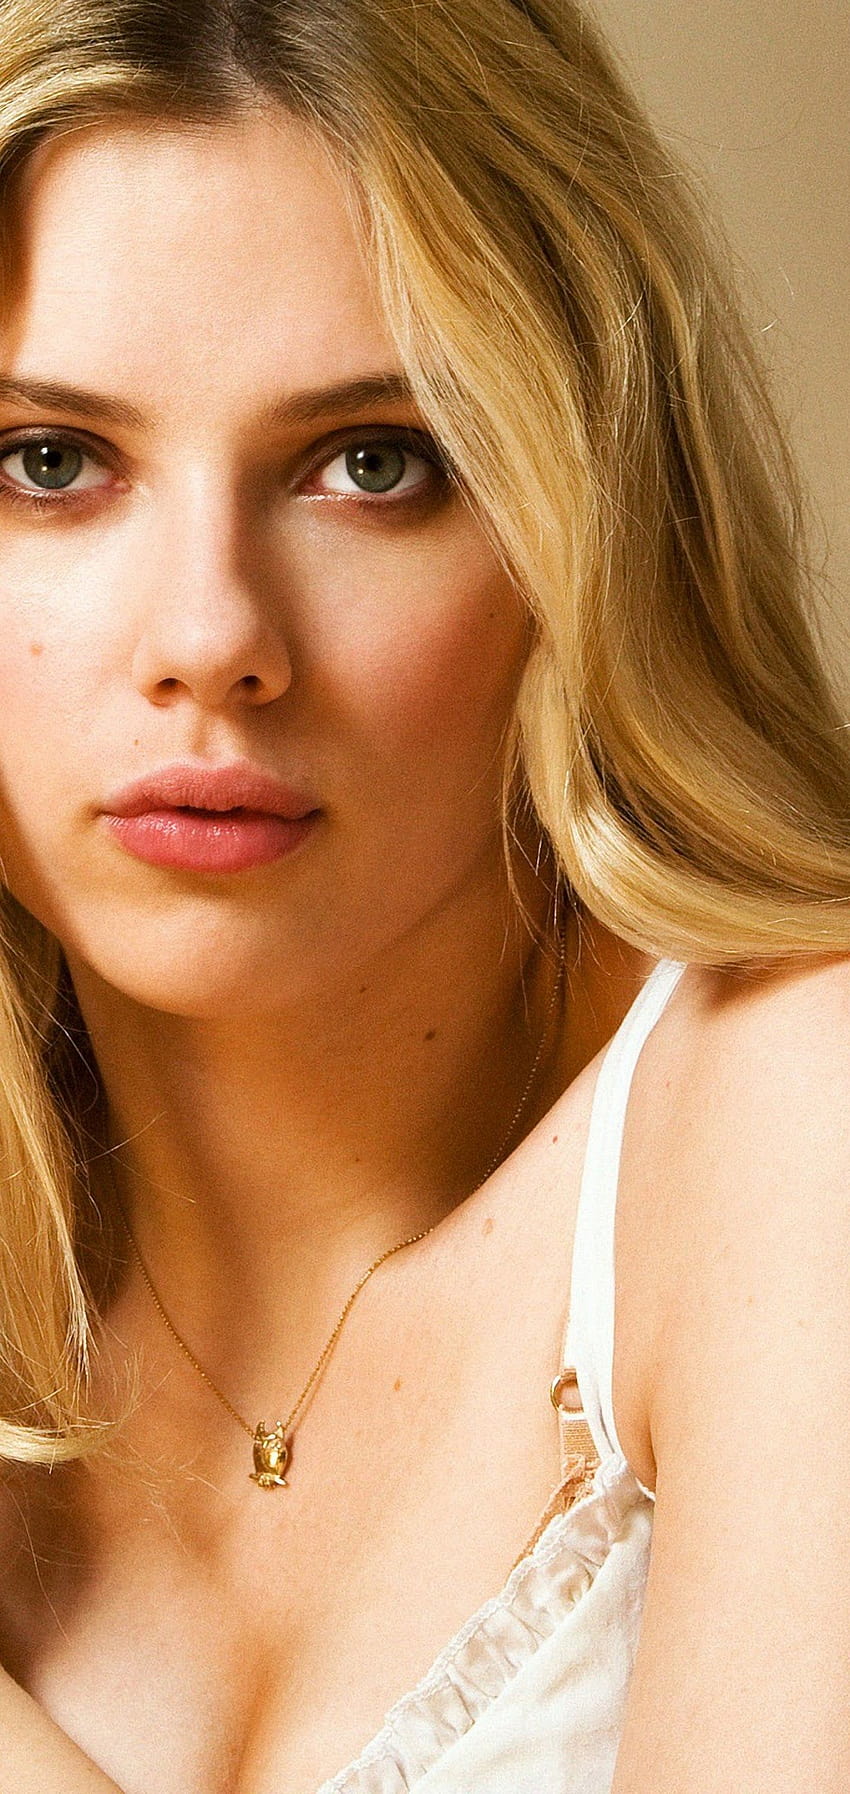 Scarlett Johansson Blonde Girl, scarlett johansson mobile HD phone wallpaper